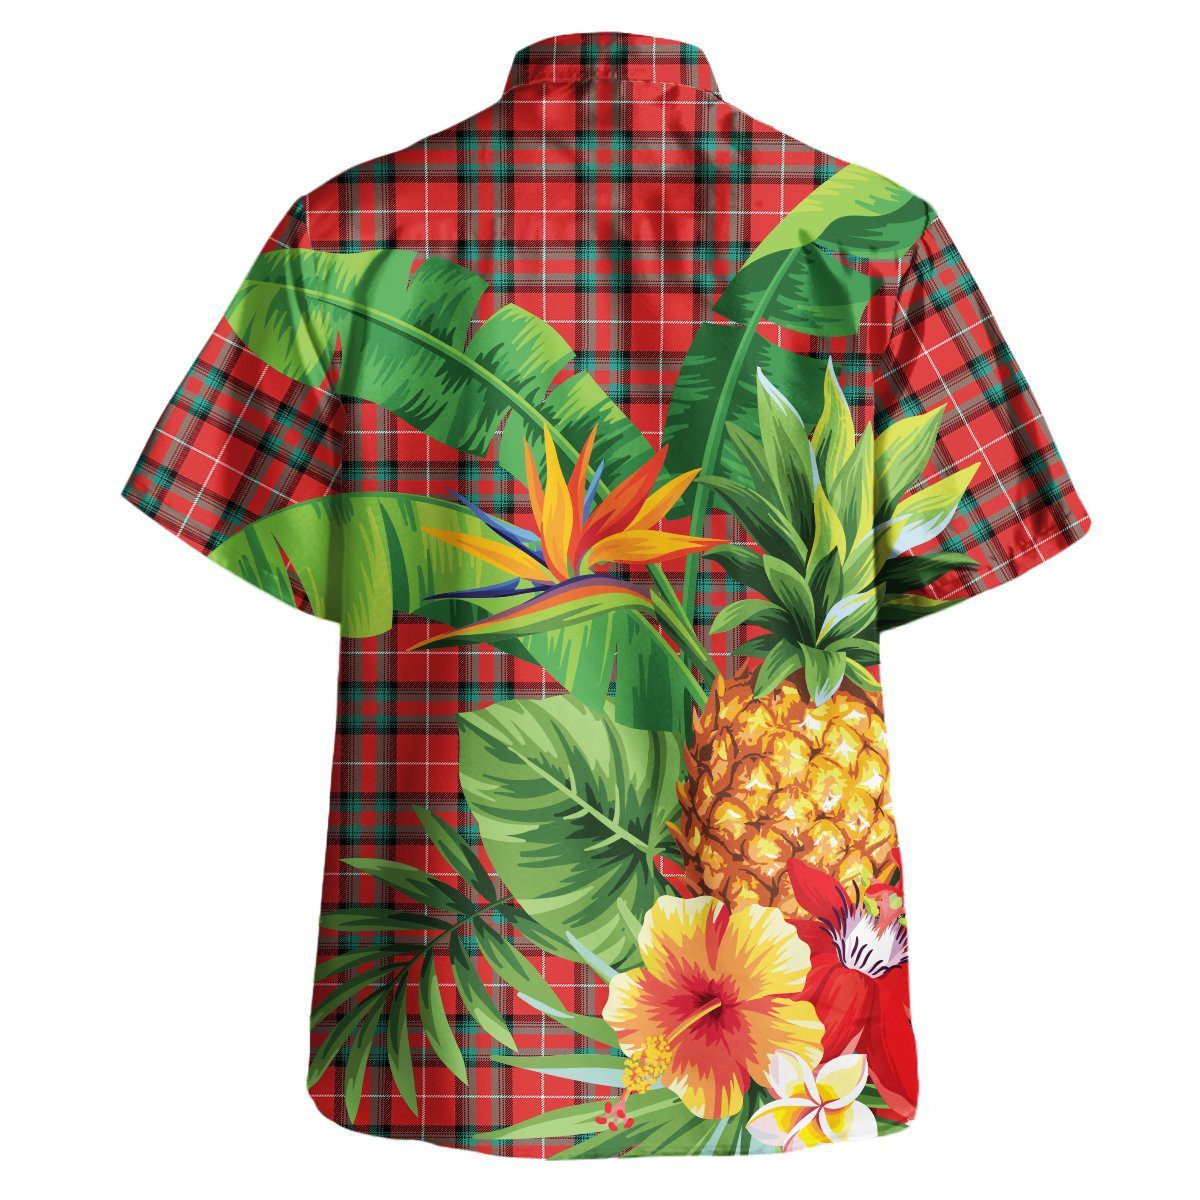 Stuart of Bute Tartan Aloha Shirt version 2